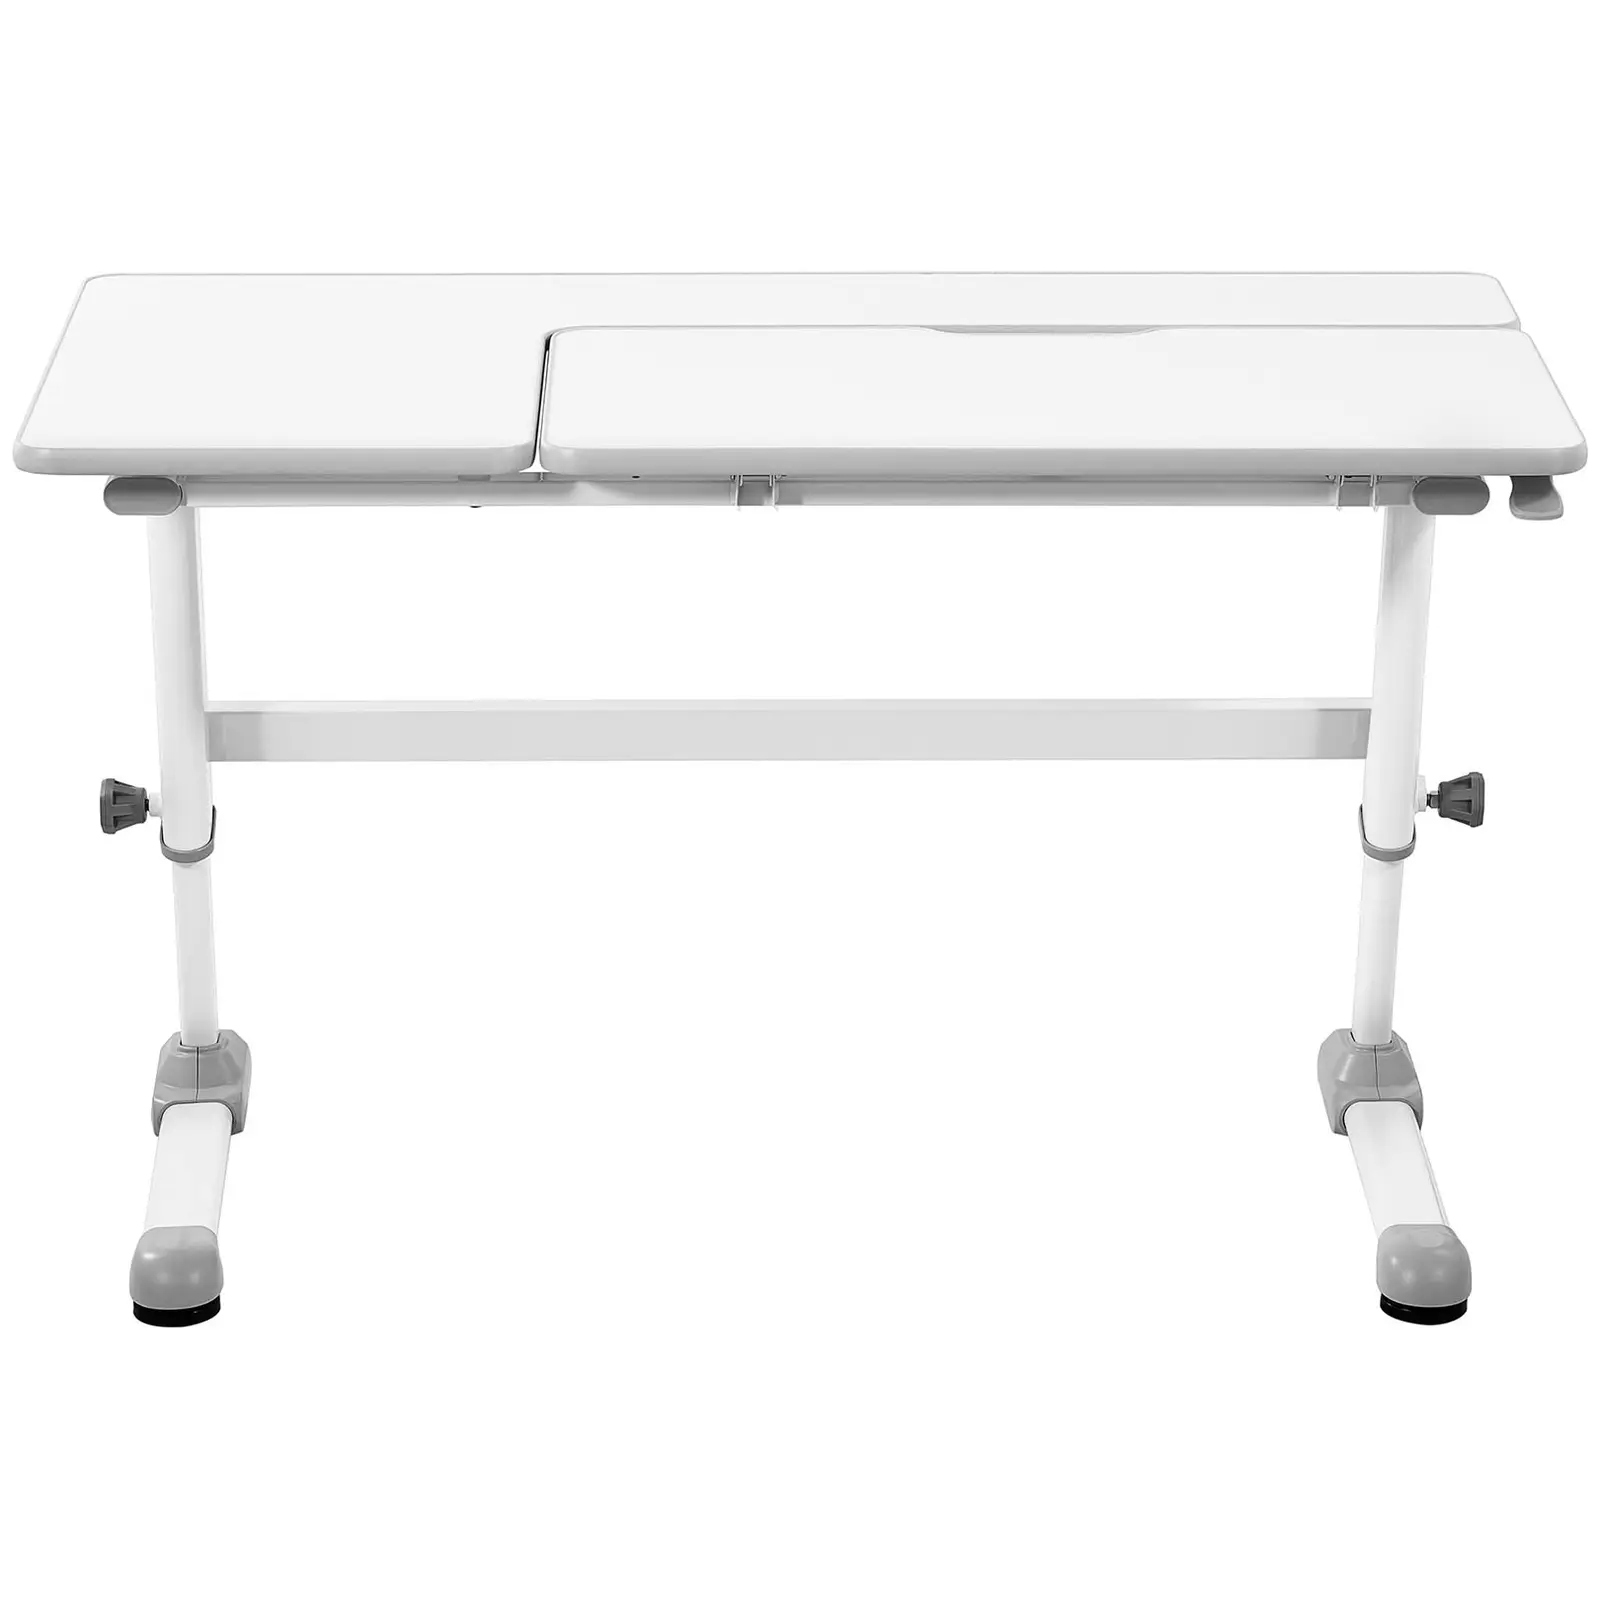 Sitt-stå skrivebord - 120 x 66 cm - tilts 0 - 50° - høyde: 600 - 760 mm